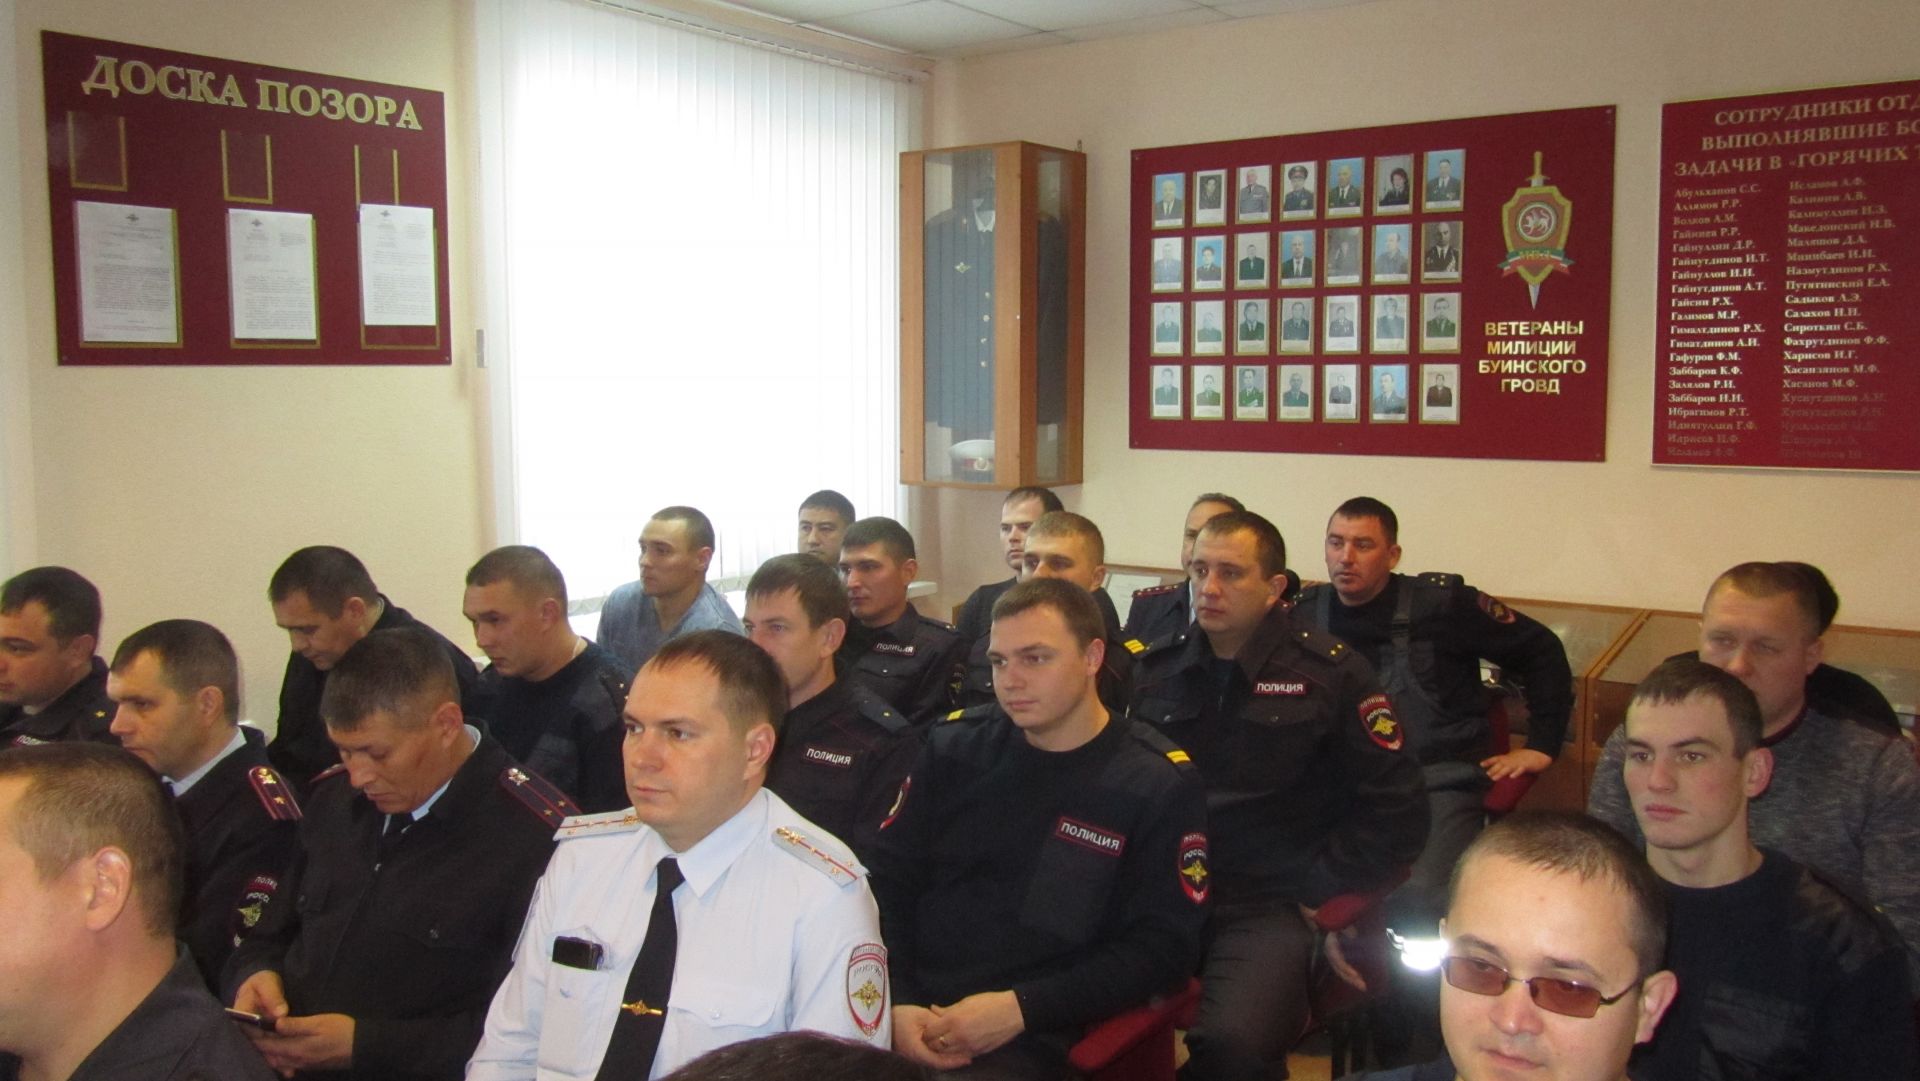 Марат Җаббаров полицейскийлар белән очрашты (+фото)